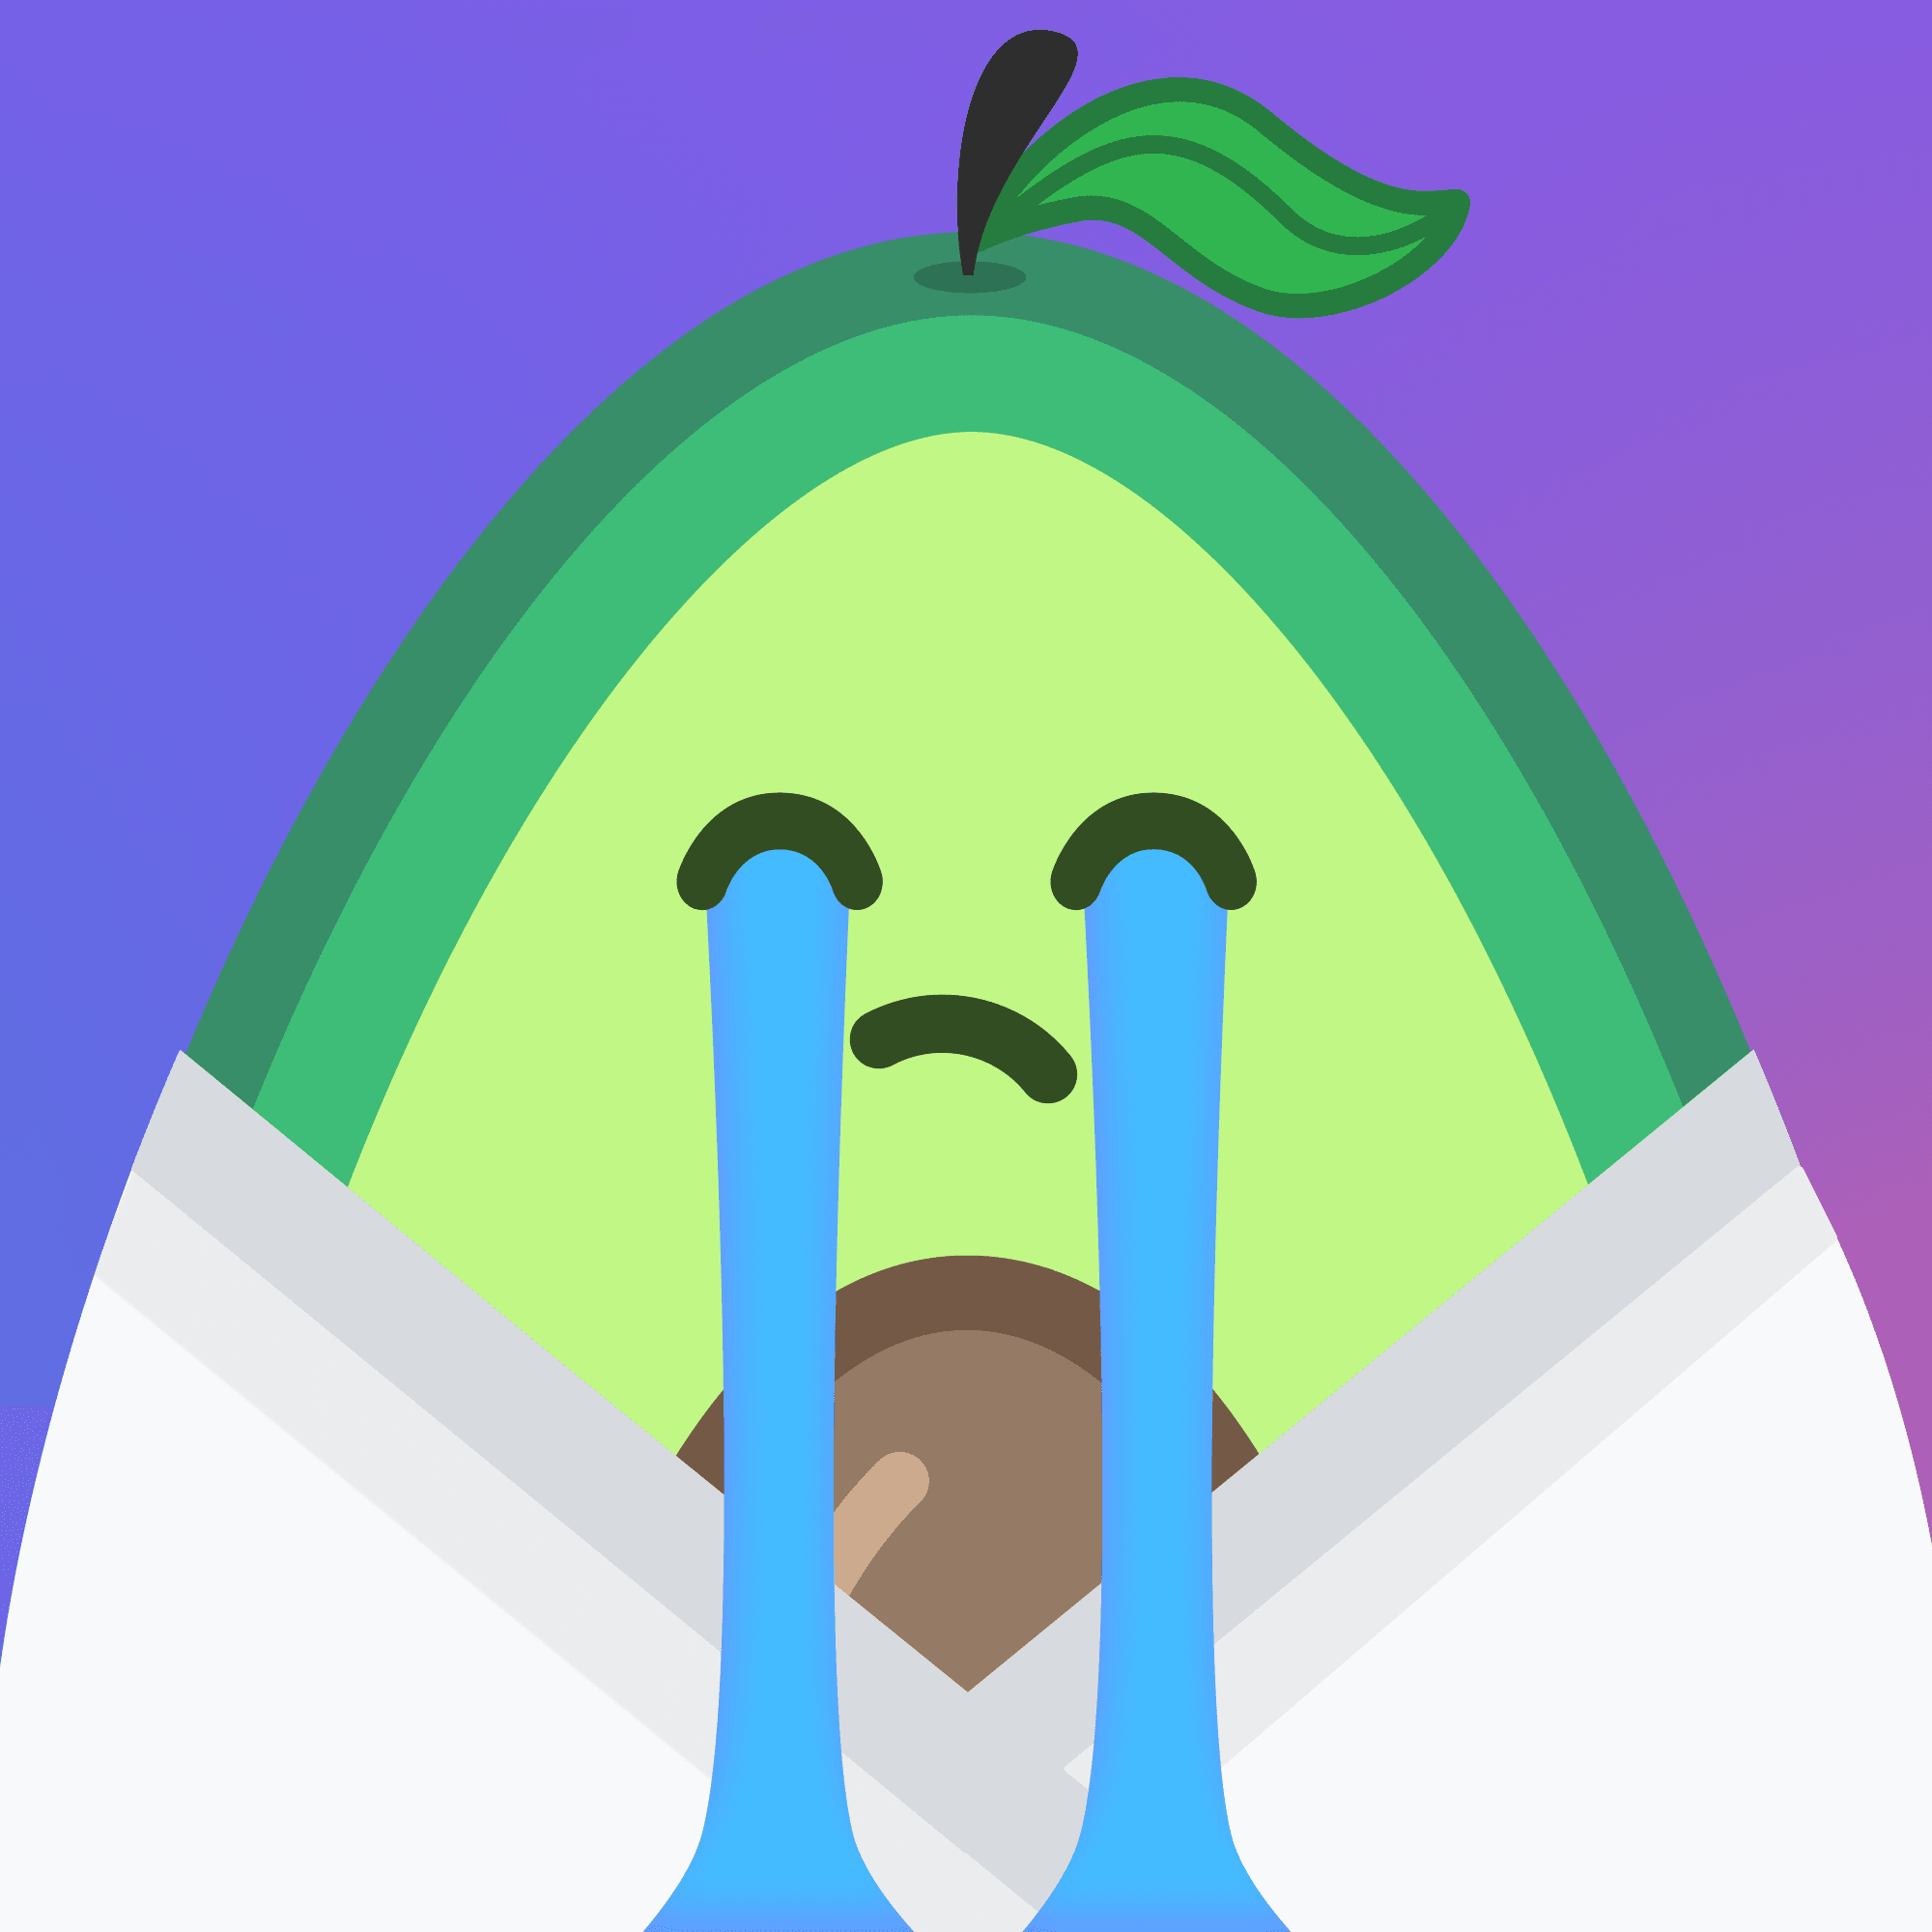 Sad Avocado